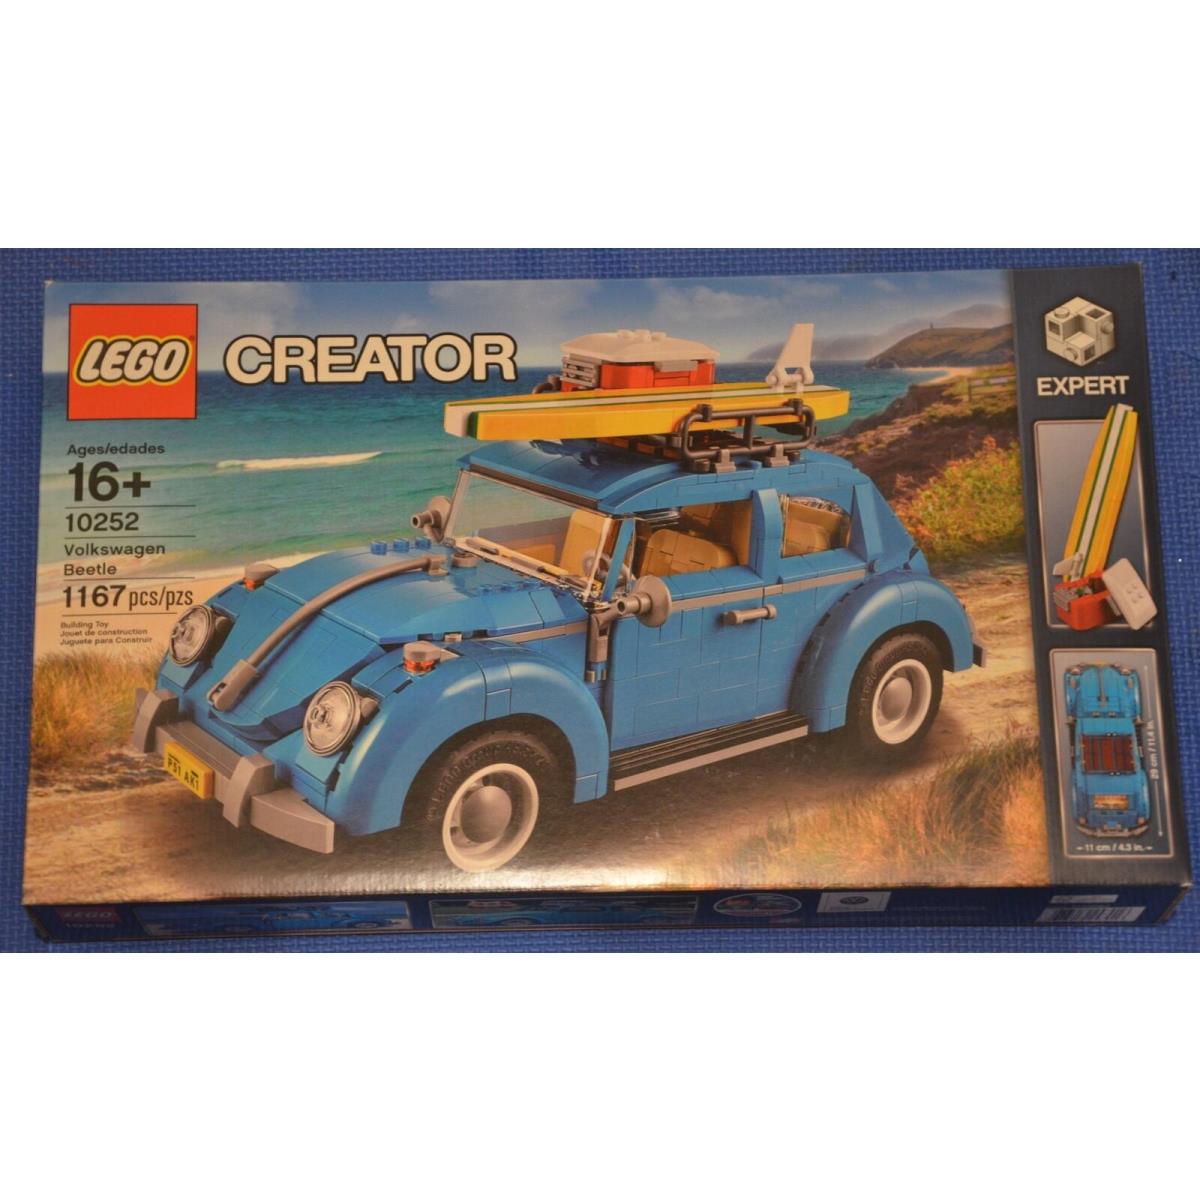 Lego 10252 Creator Volkswagen Beetle Set